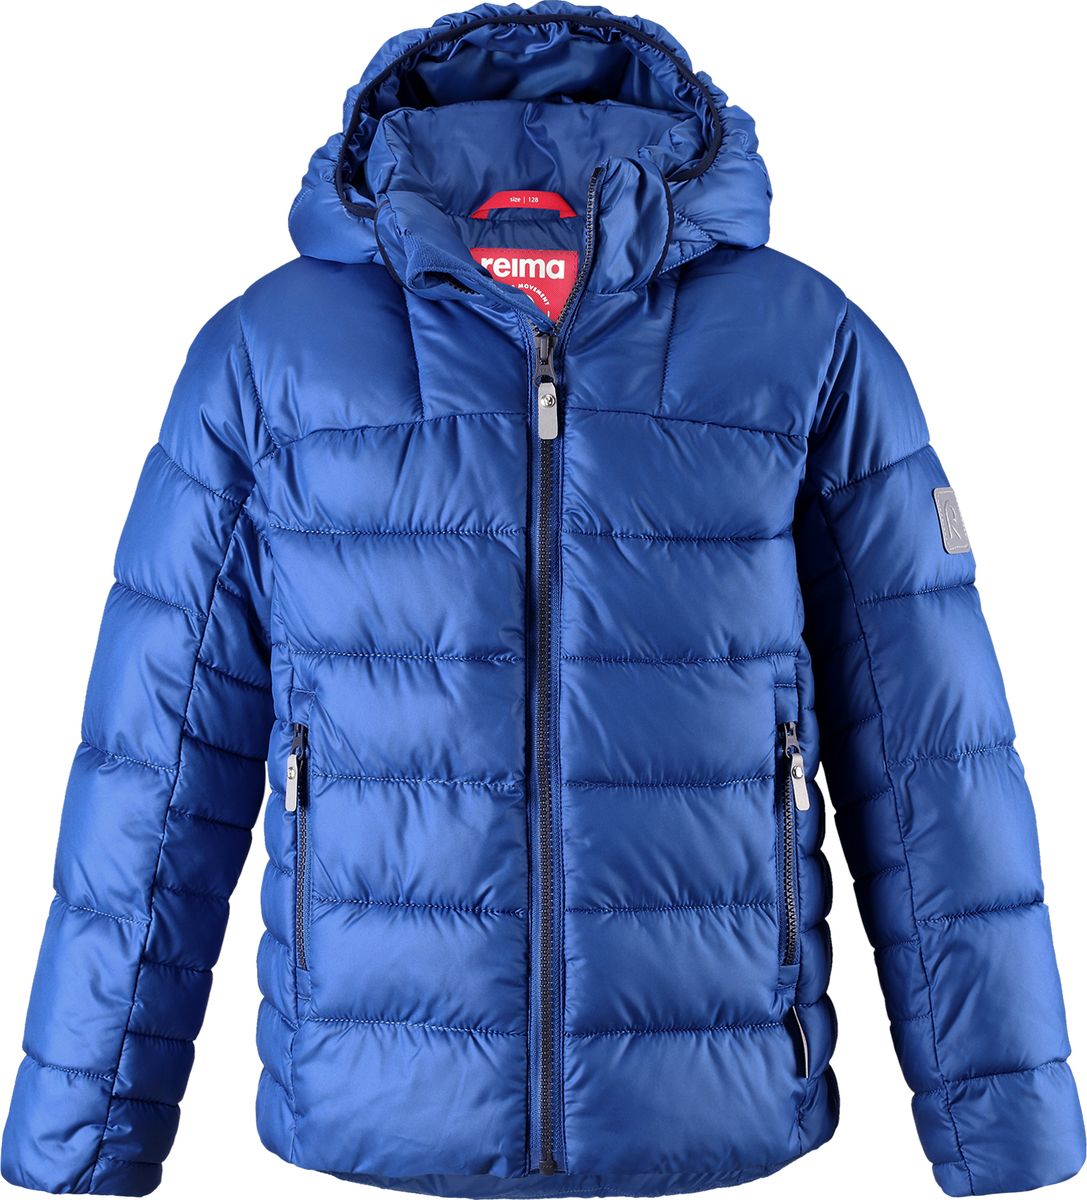 Куртка для мальчика Reima Petteri, цвет: синий. 5313436680. Размер 110